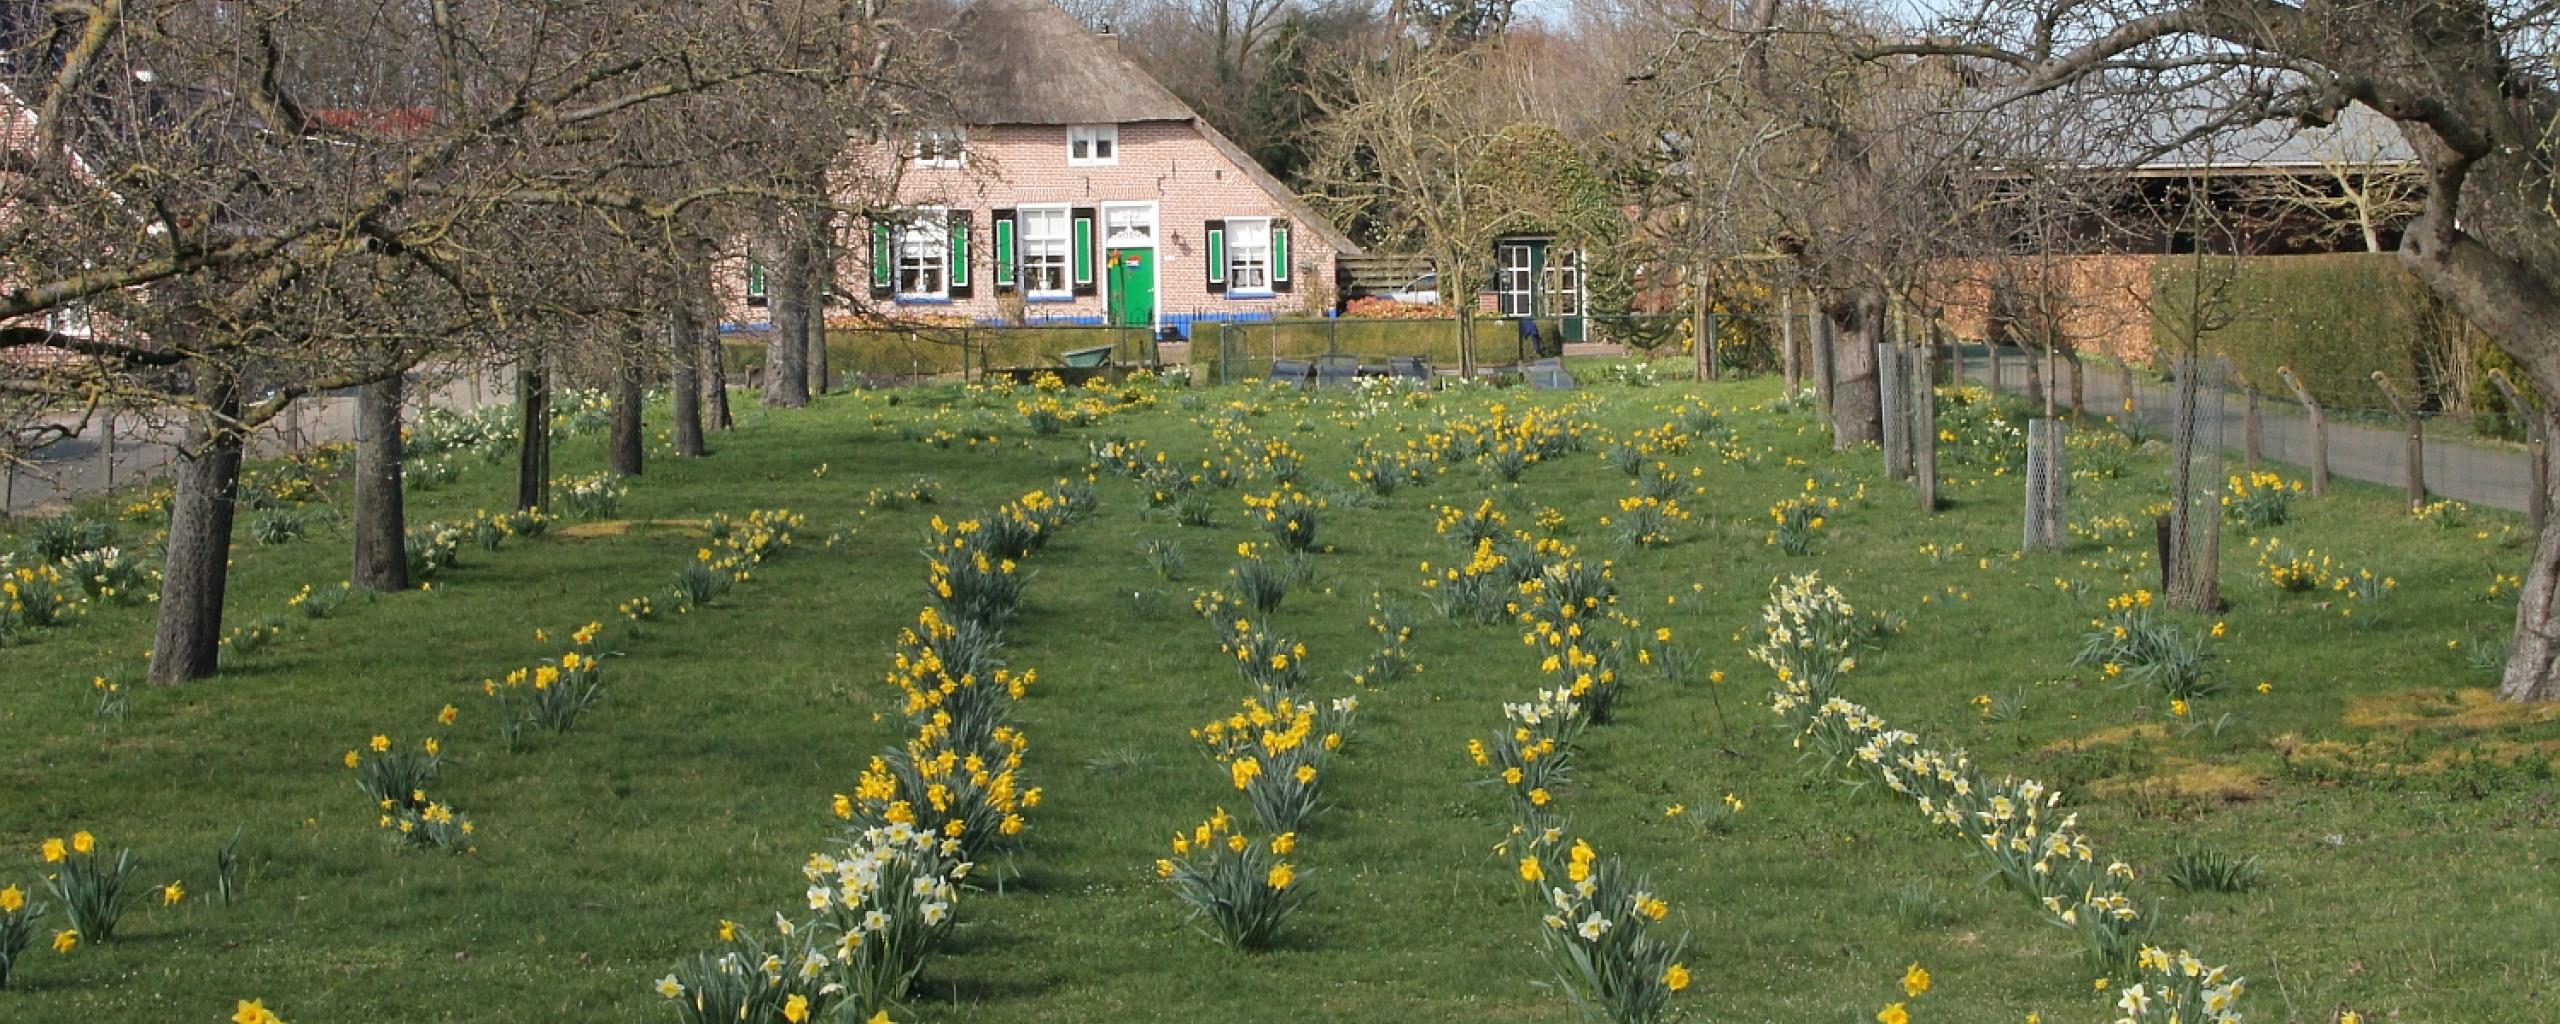 Wilde narcissen bloeien in een weiland aan de Gemeenteweg